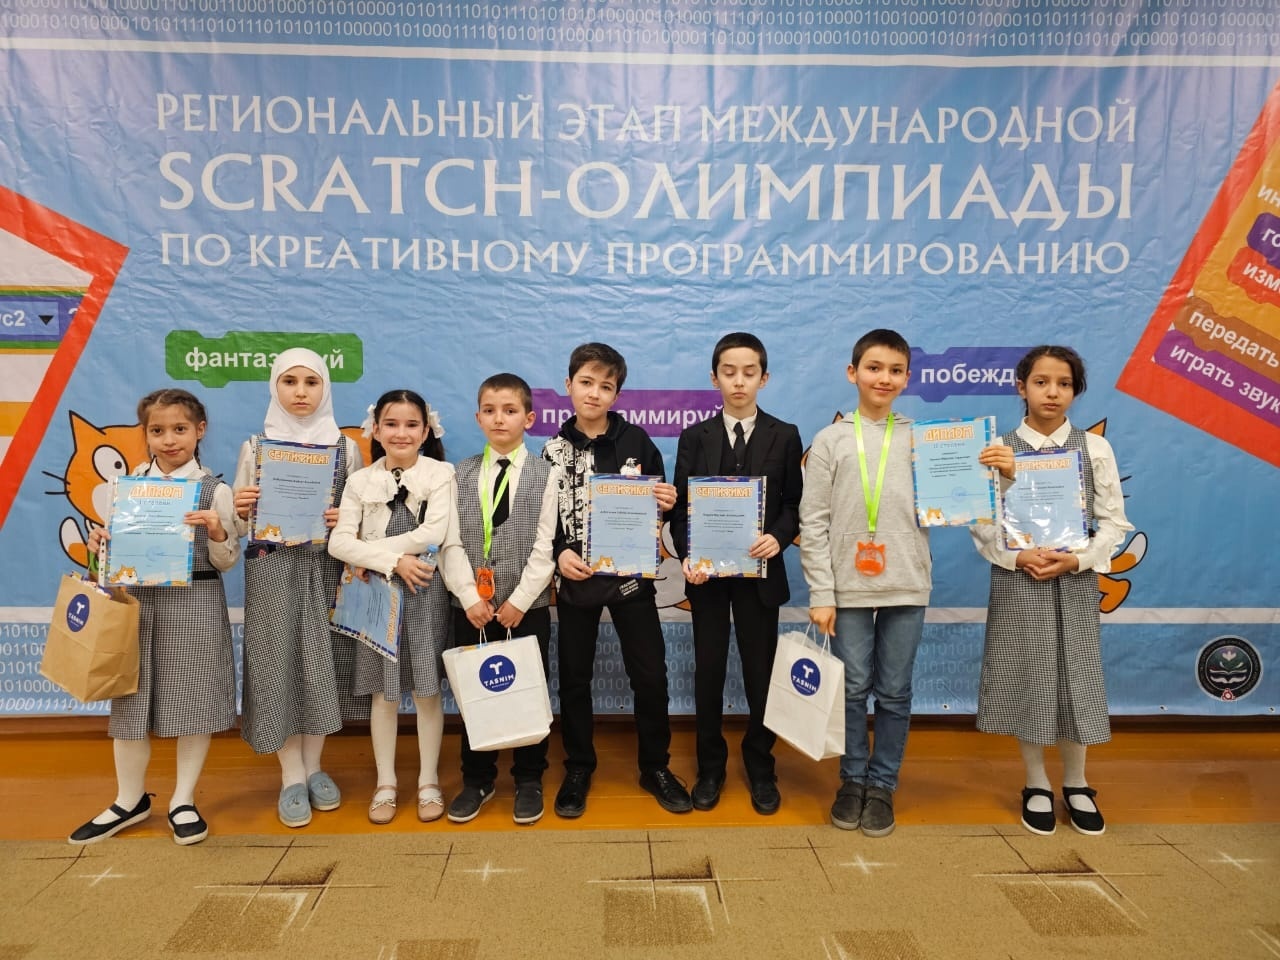 Сегодня наши лицеисты стали победителеми и призерами на региональном этапе Международной Scratch-Олимпиады по креативному программированию..